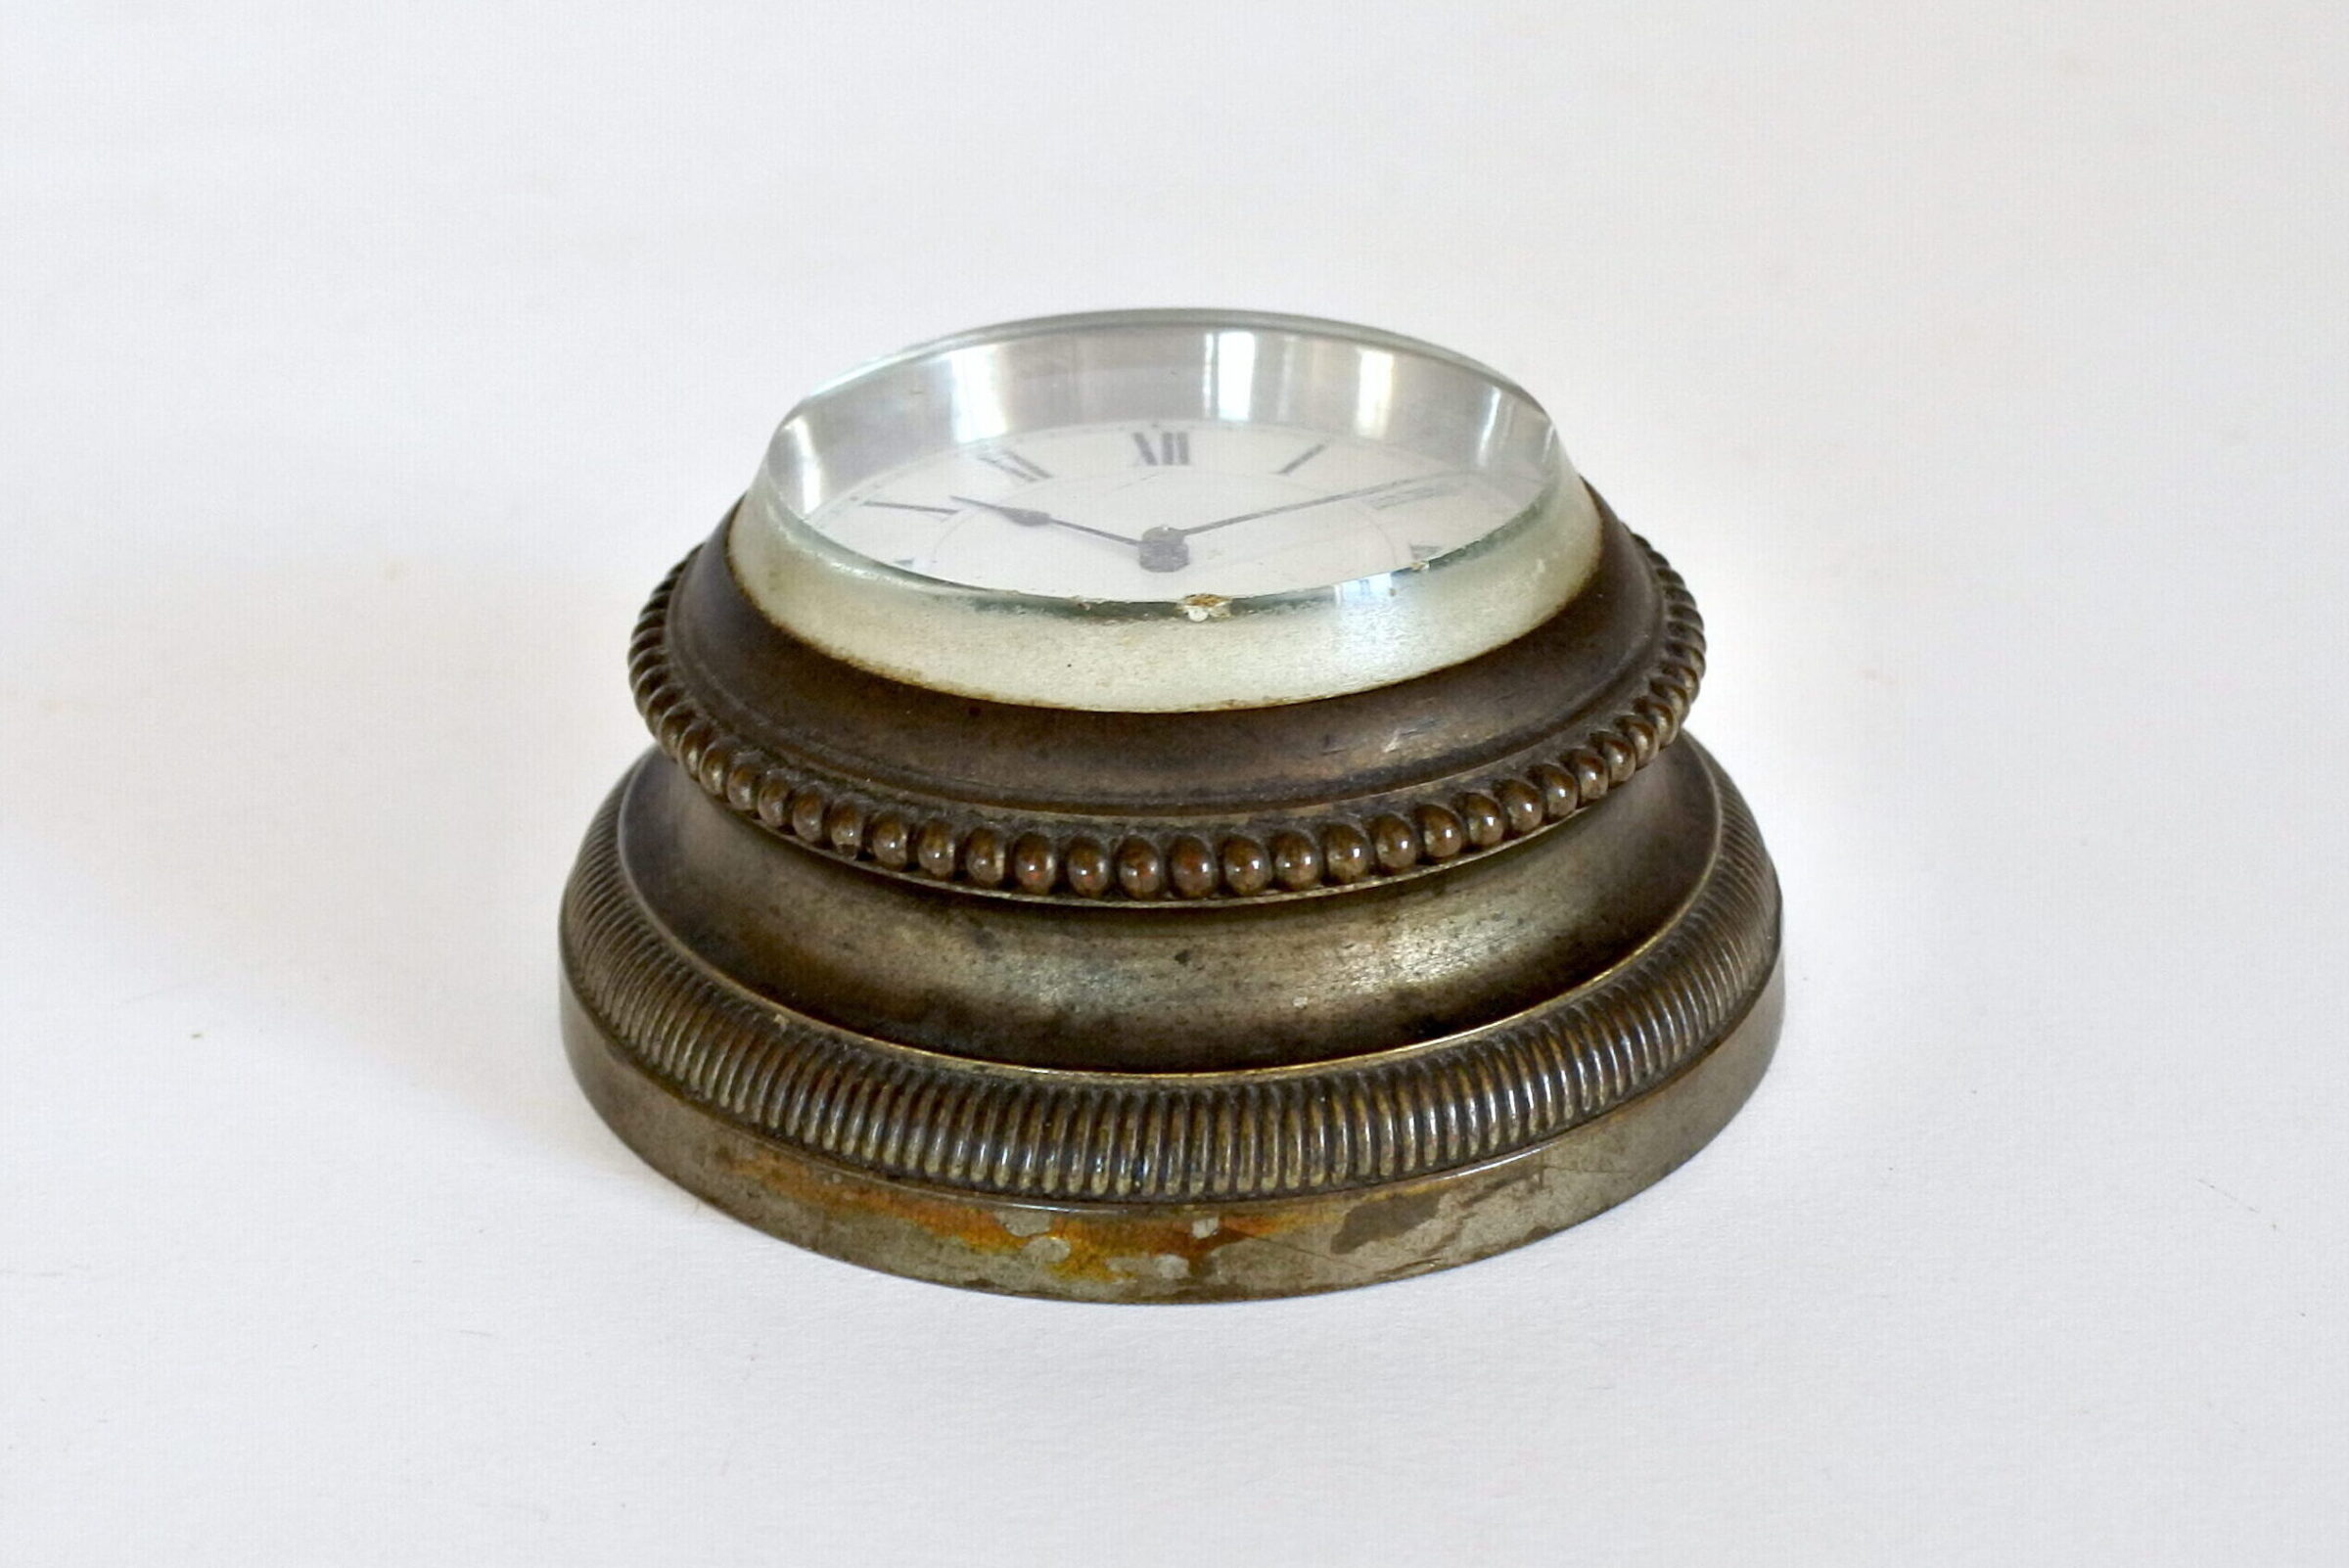 Orologio da tavolo in bronzo con funzione di fermacarte - 3